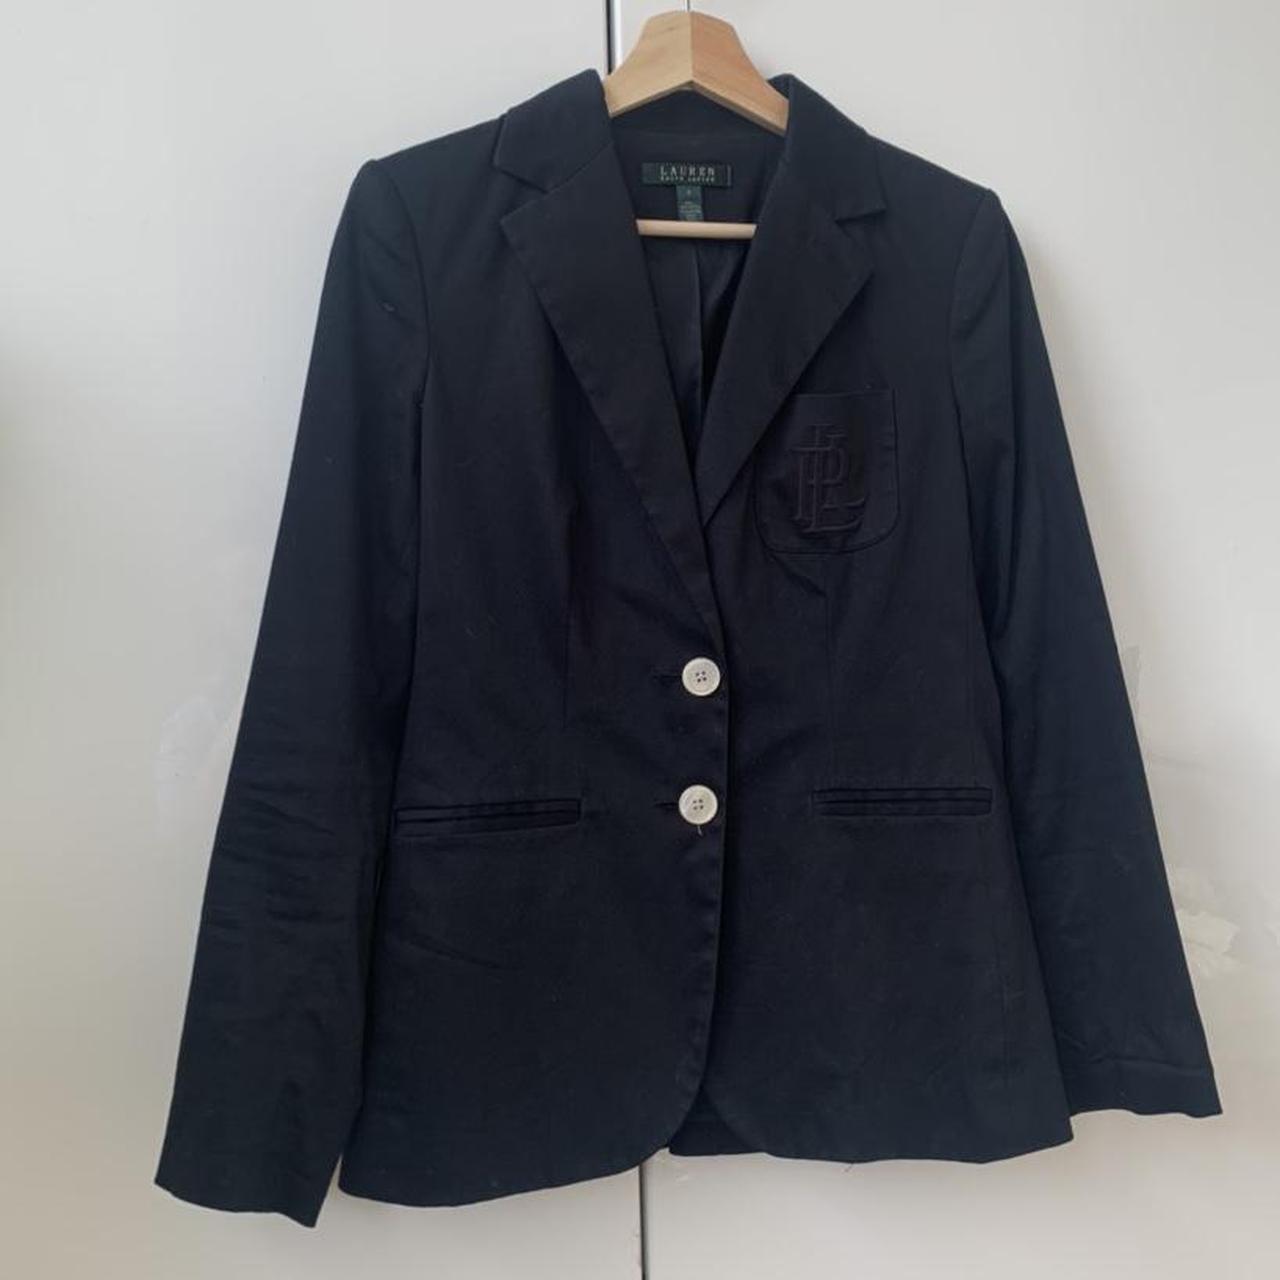 Ralph Lauren black tailored blazer with Ralph Lauren... - Depop